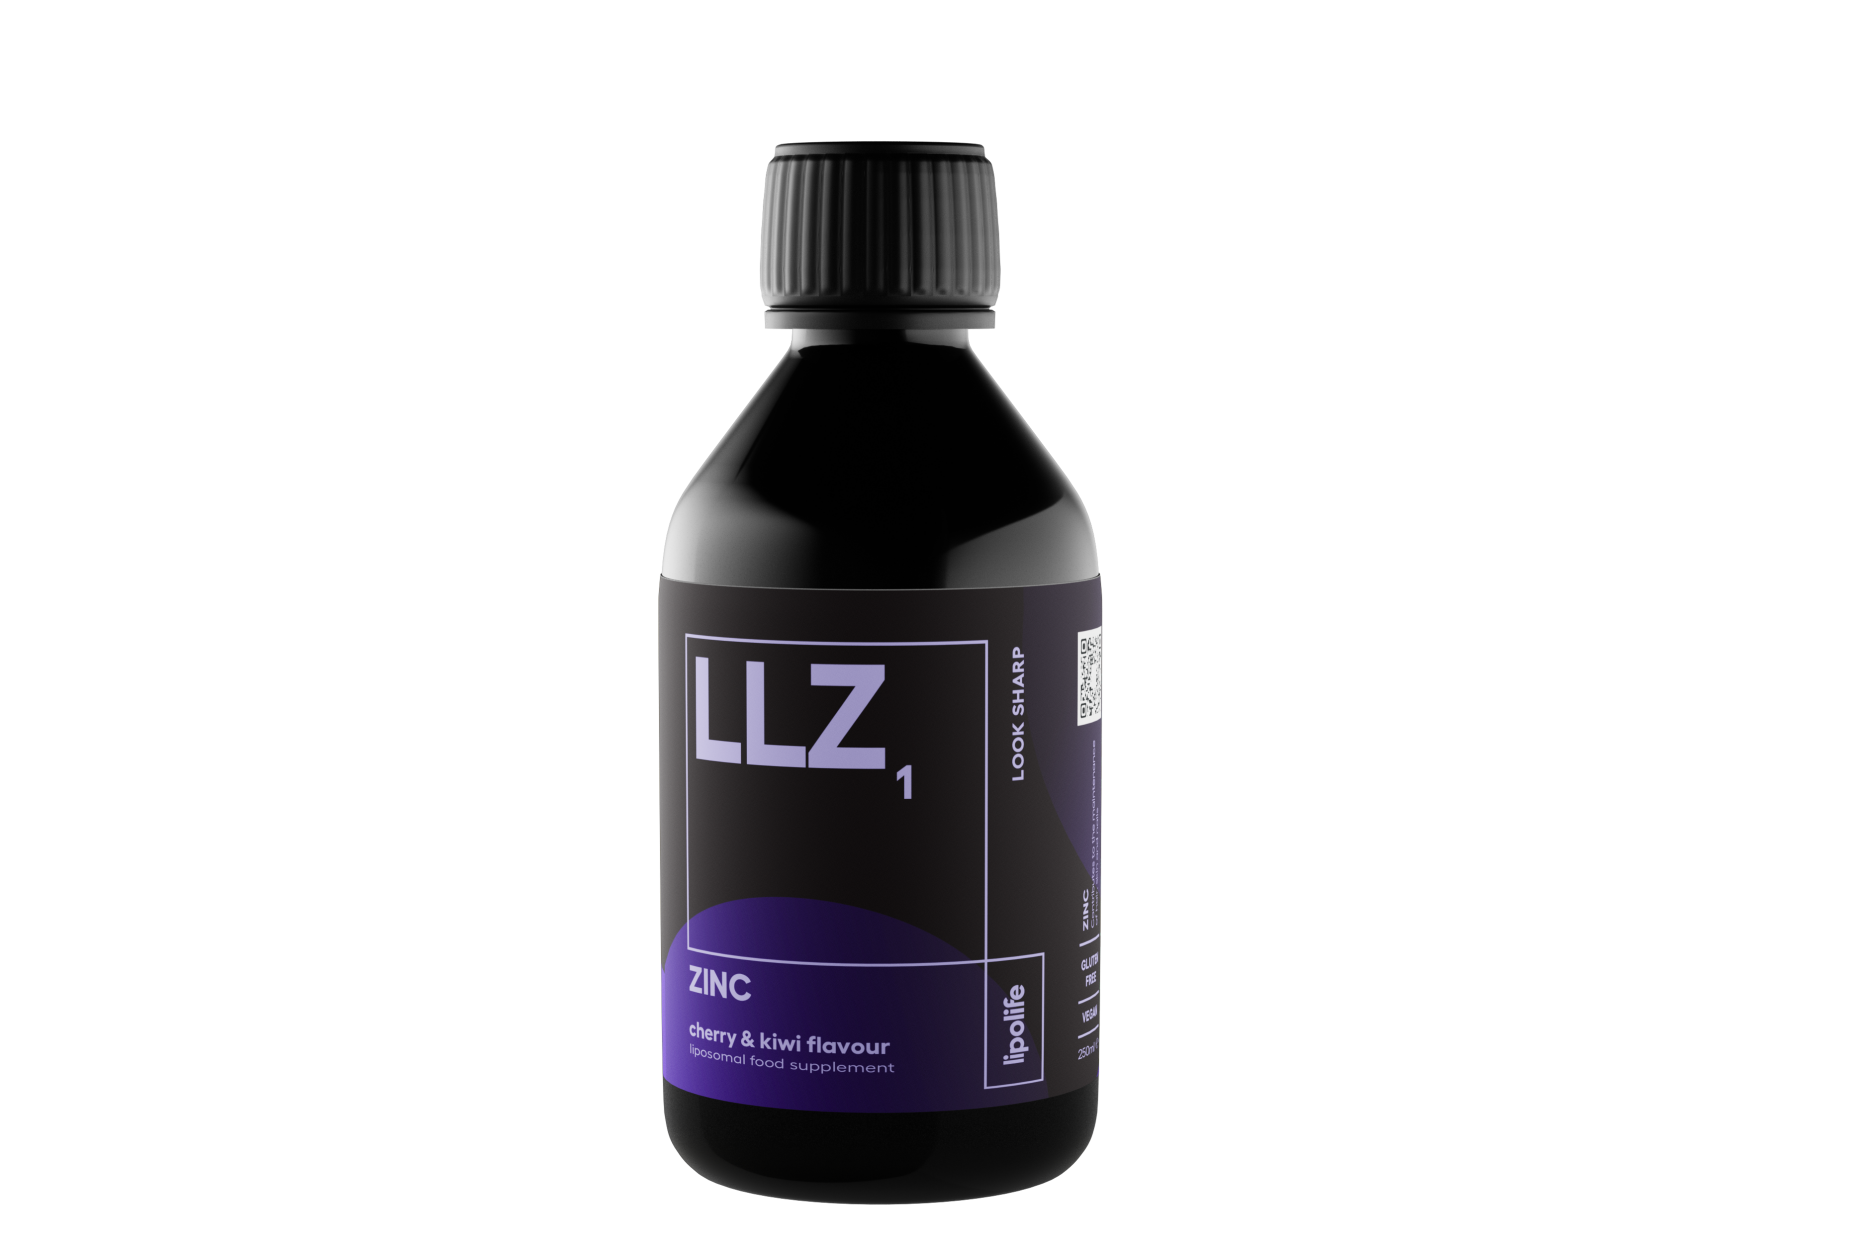 LLZ1 Zinc Cherry & Kiwi Flavour 240ml (Liposomal)